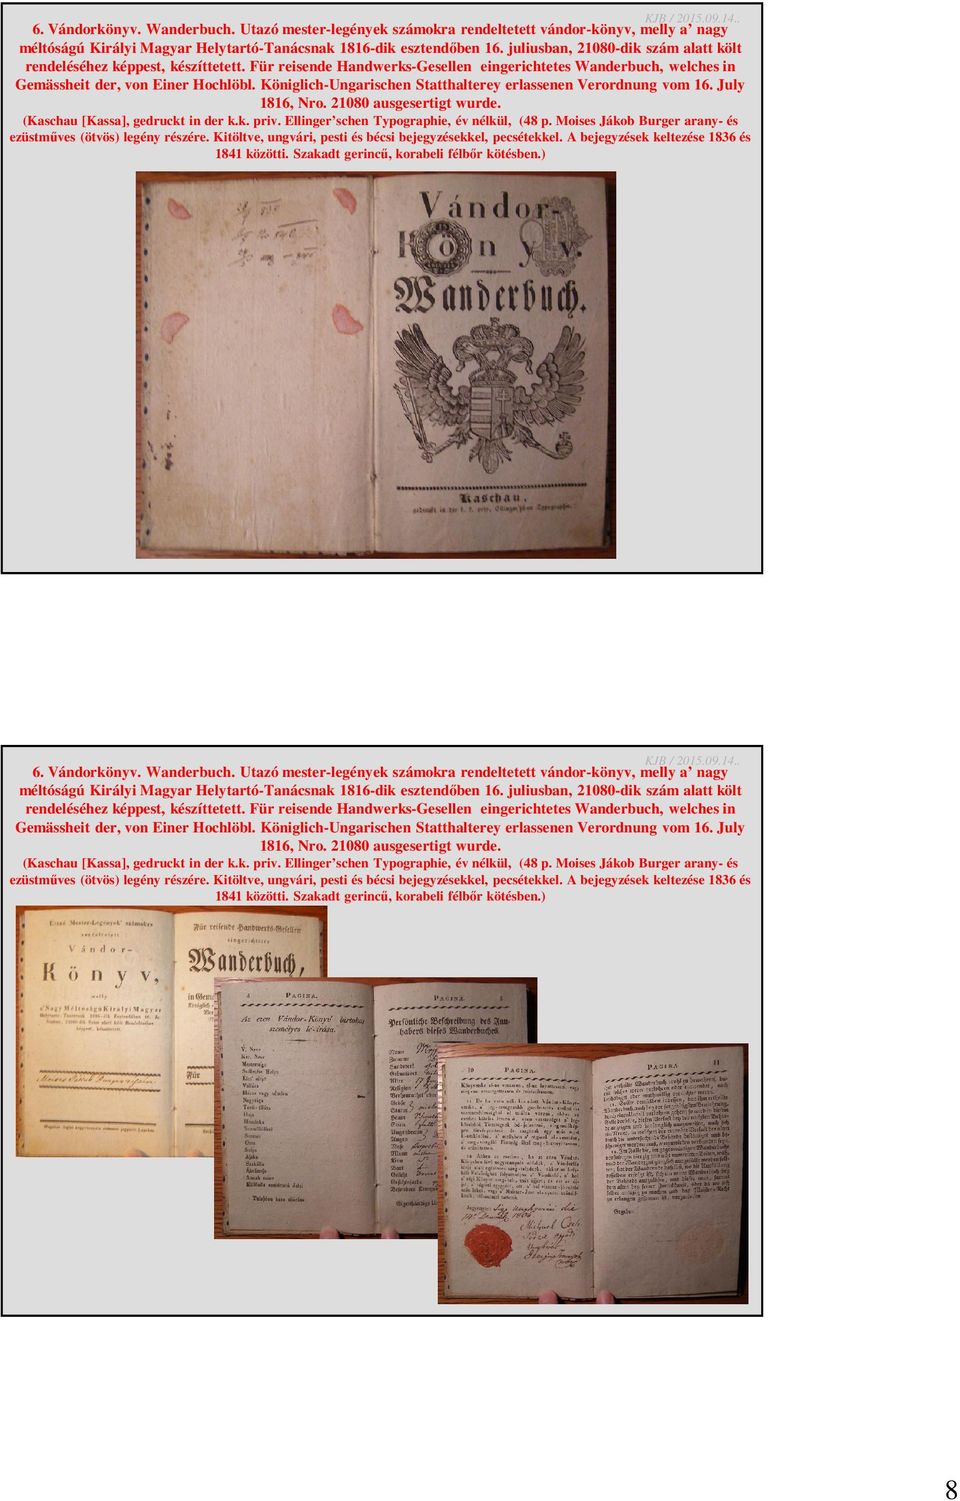 Königlich-Ungarischen Statthalterey erlassenen Verordnung vom 16. July 1816, Nro. 21080 ausgesertigt wurde. (Kaschau [Kassa], gedruckt in der k.k. priv. Ellinger schen Typographie, év nélkül, (48 p.